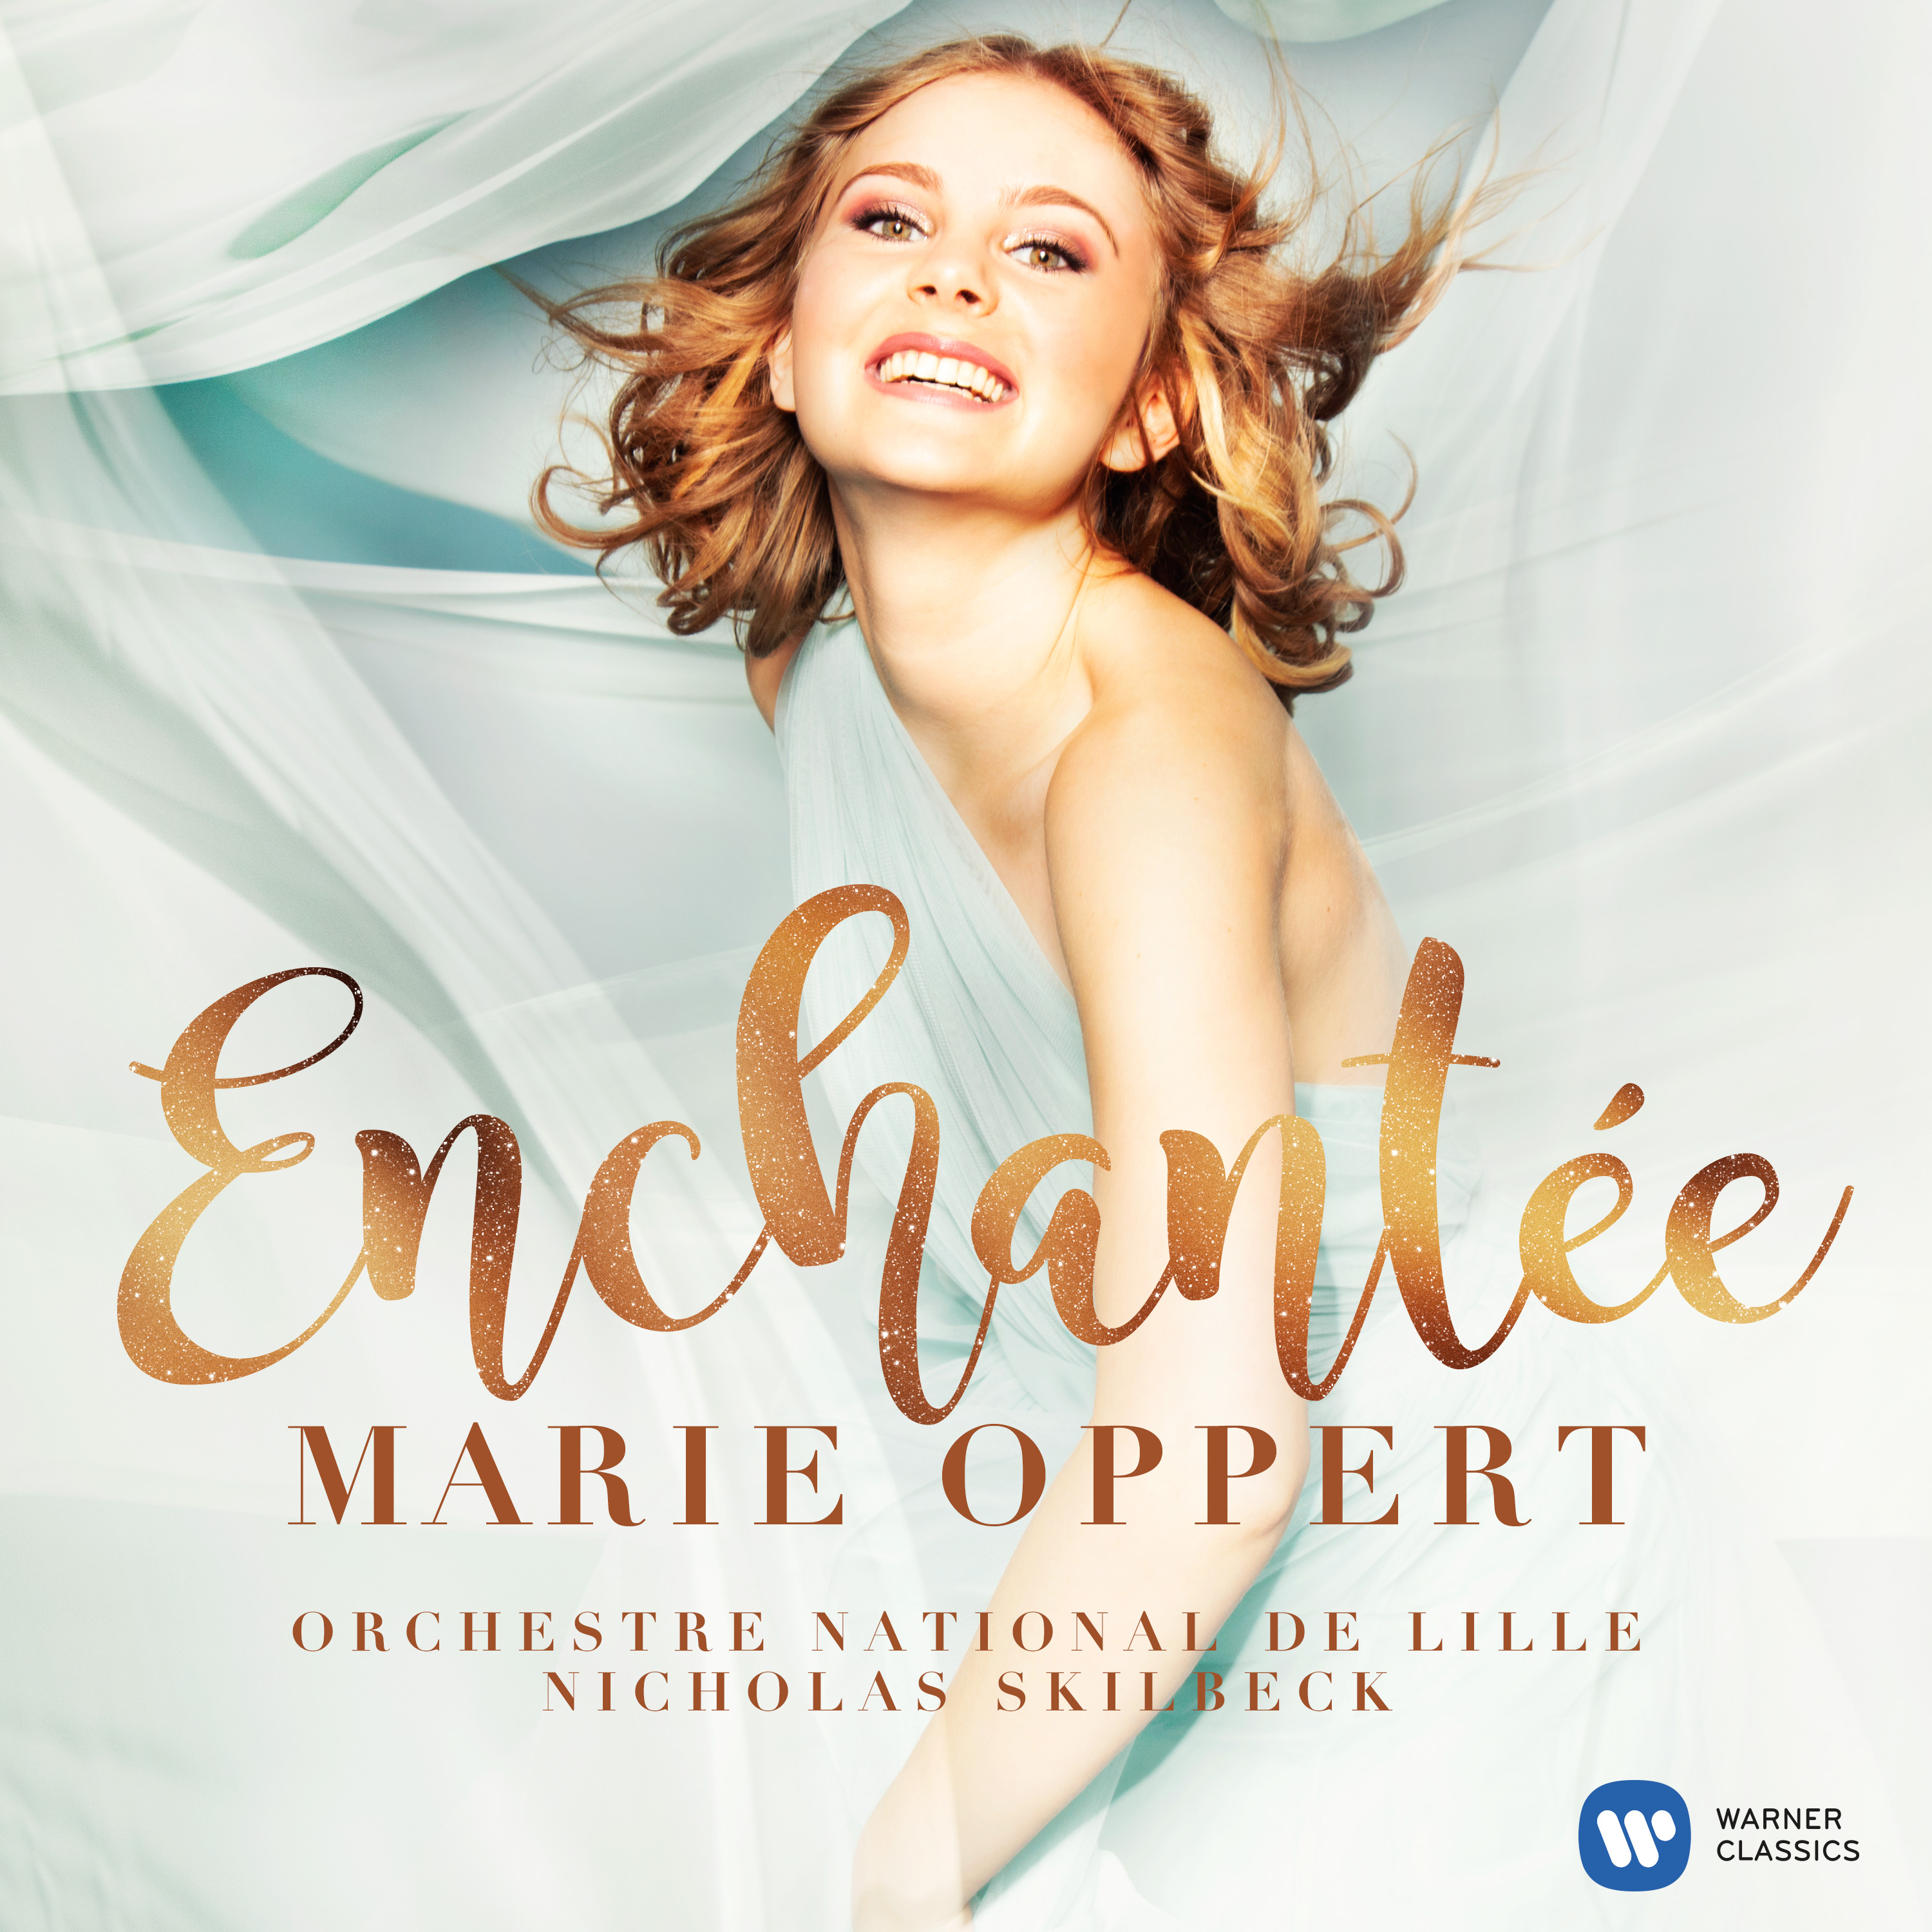 Enchantée, Marie Oppert's first album | Warner Classics Musical Christmas Gifts